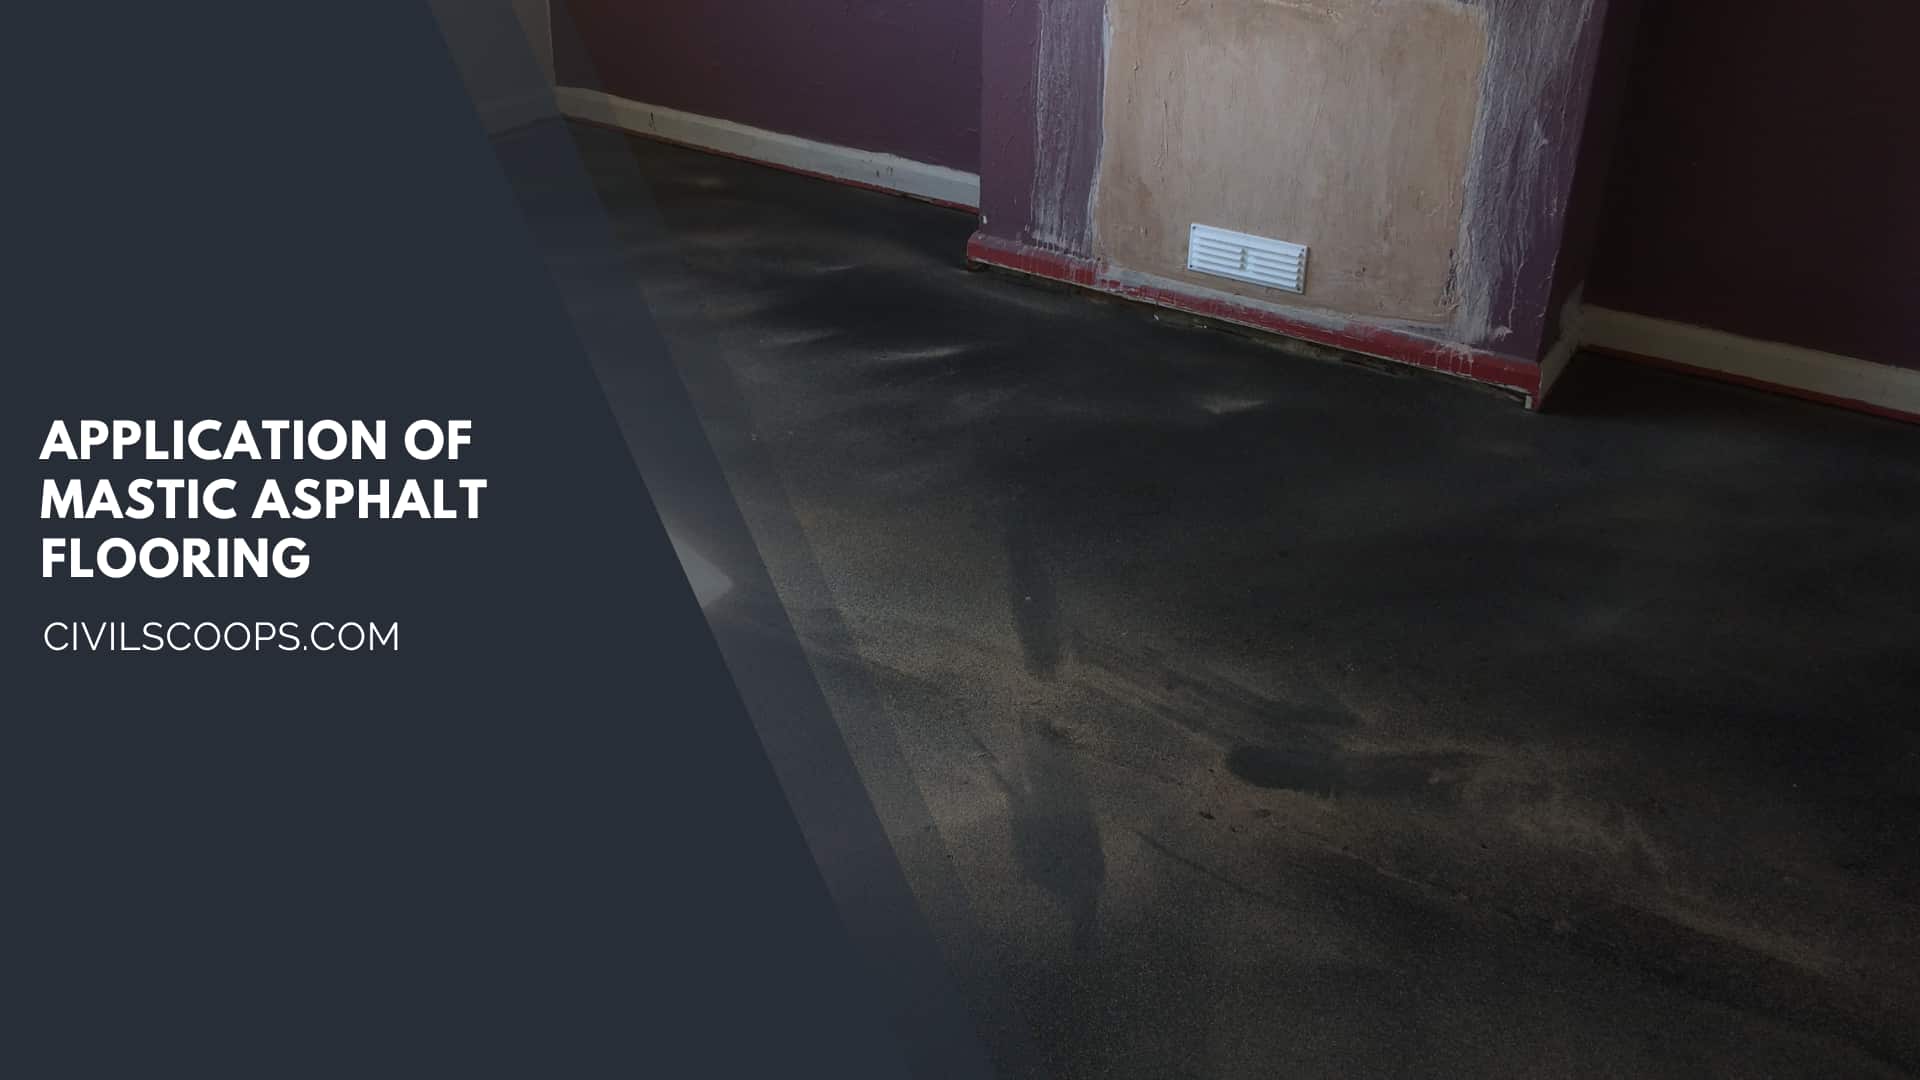 Application of Mastic Asphalt Flooring